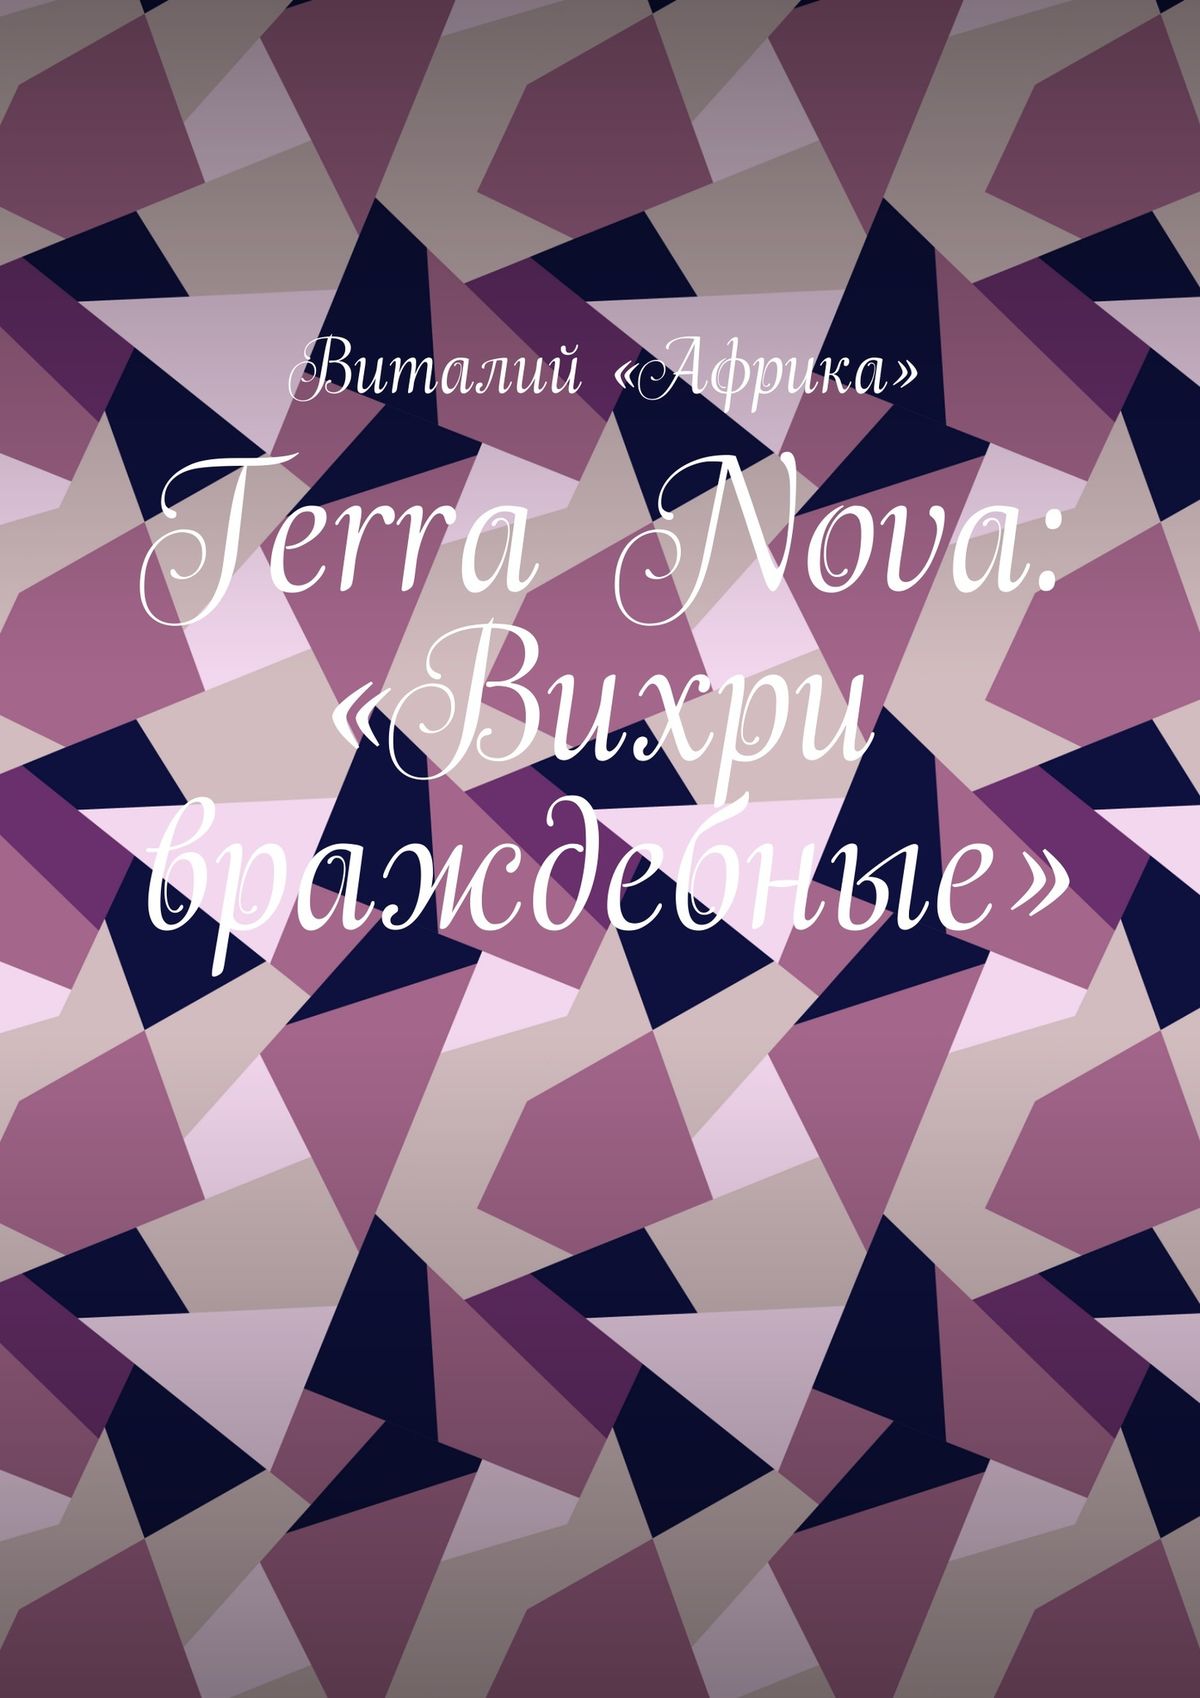 Terra Nova:«Вихри враждебные»